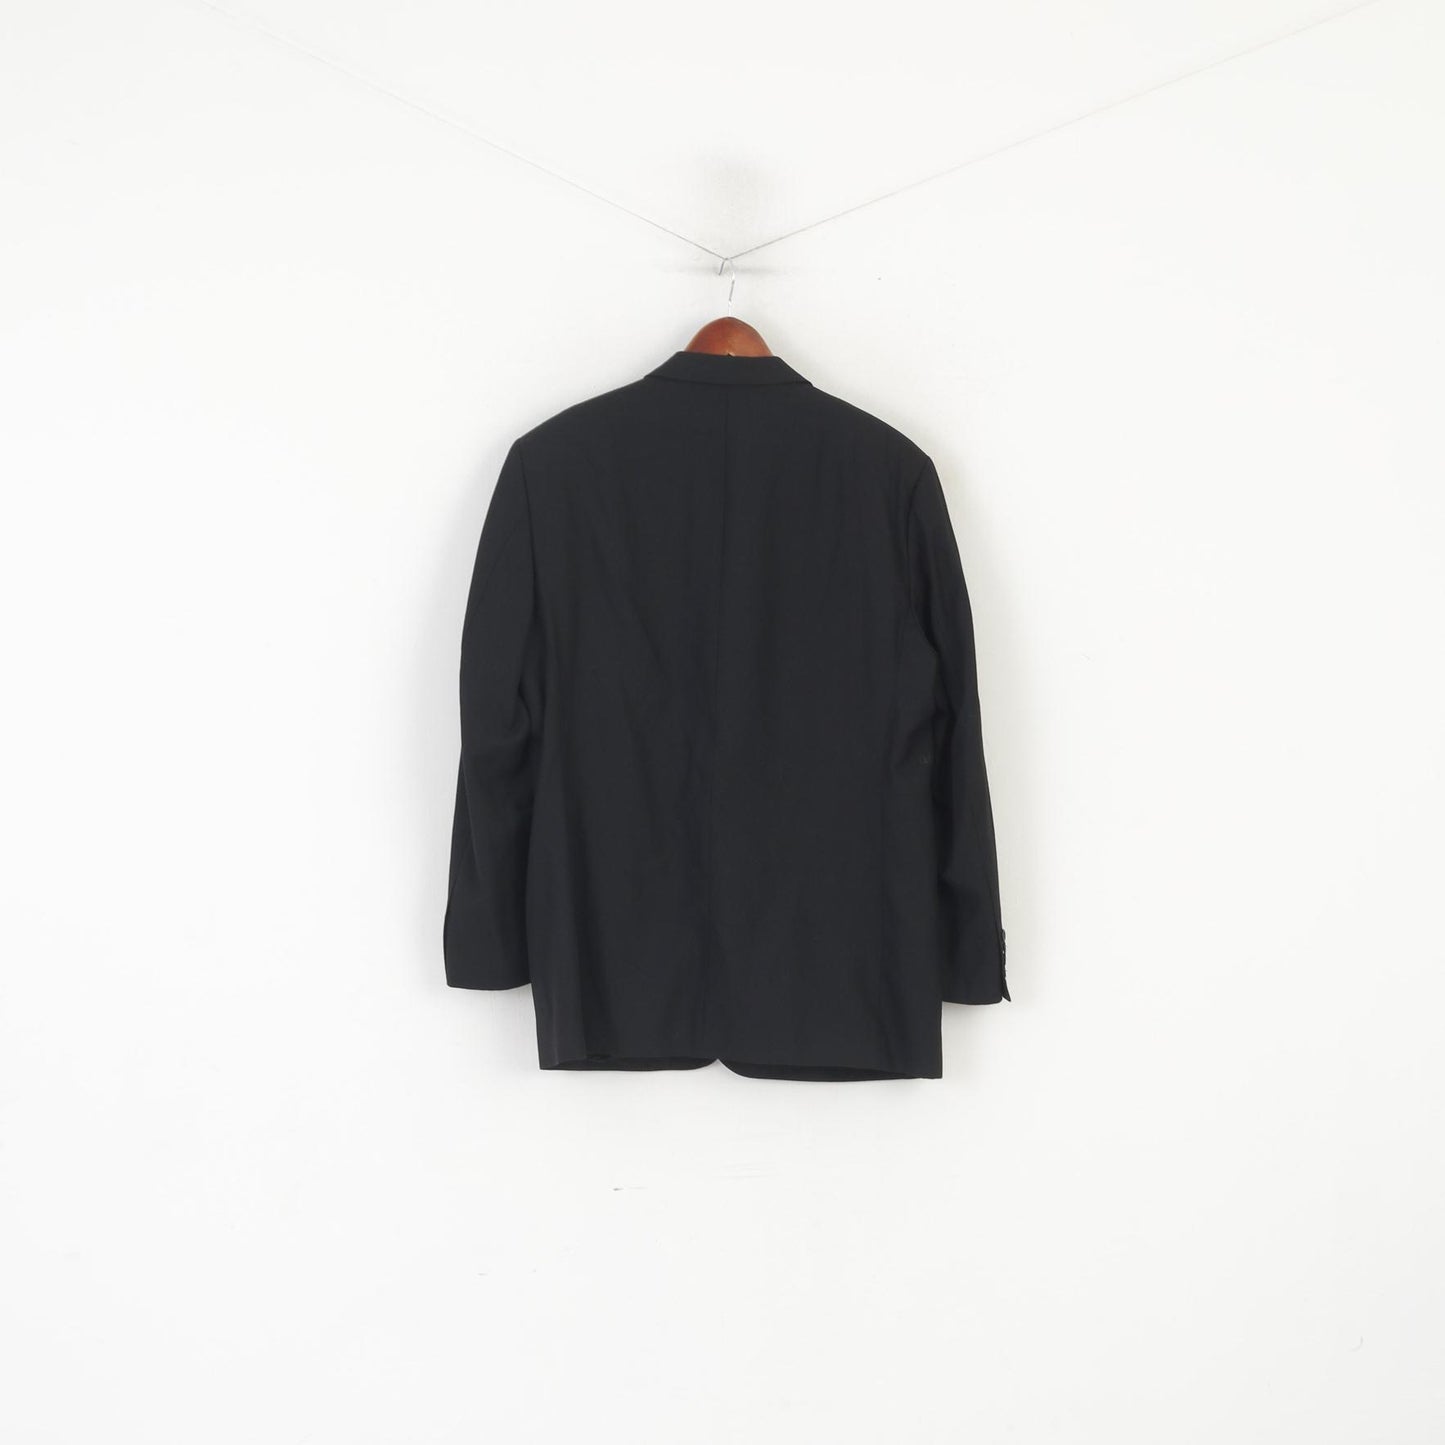 Daniel Grahame Men 42 Blazer Black Wool Blend Shoulder Pads Single Breasted Jacket